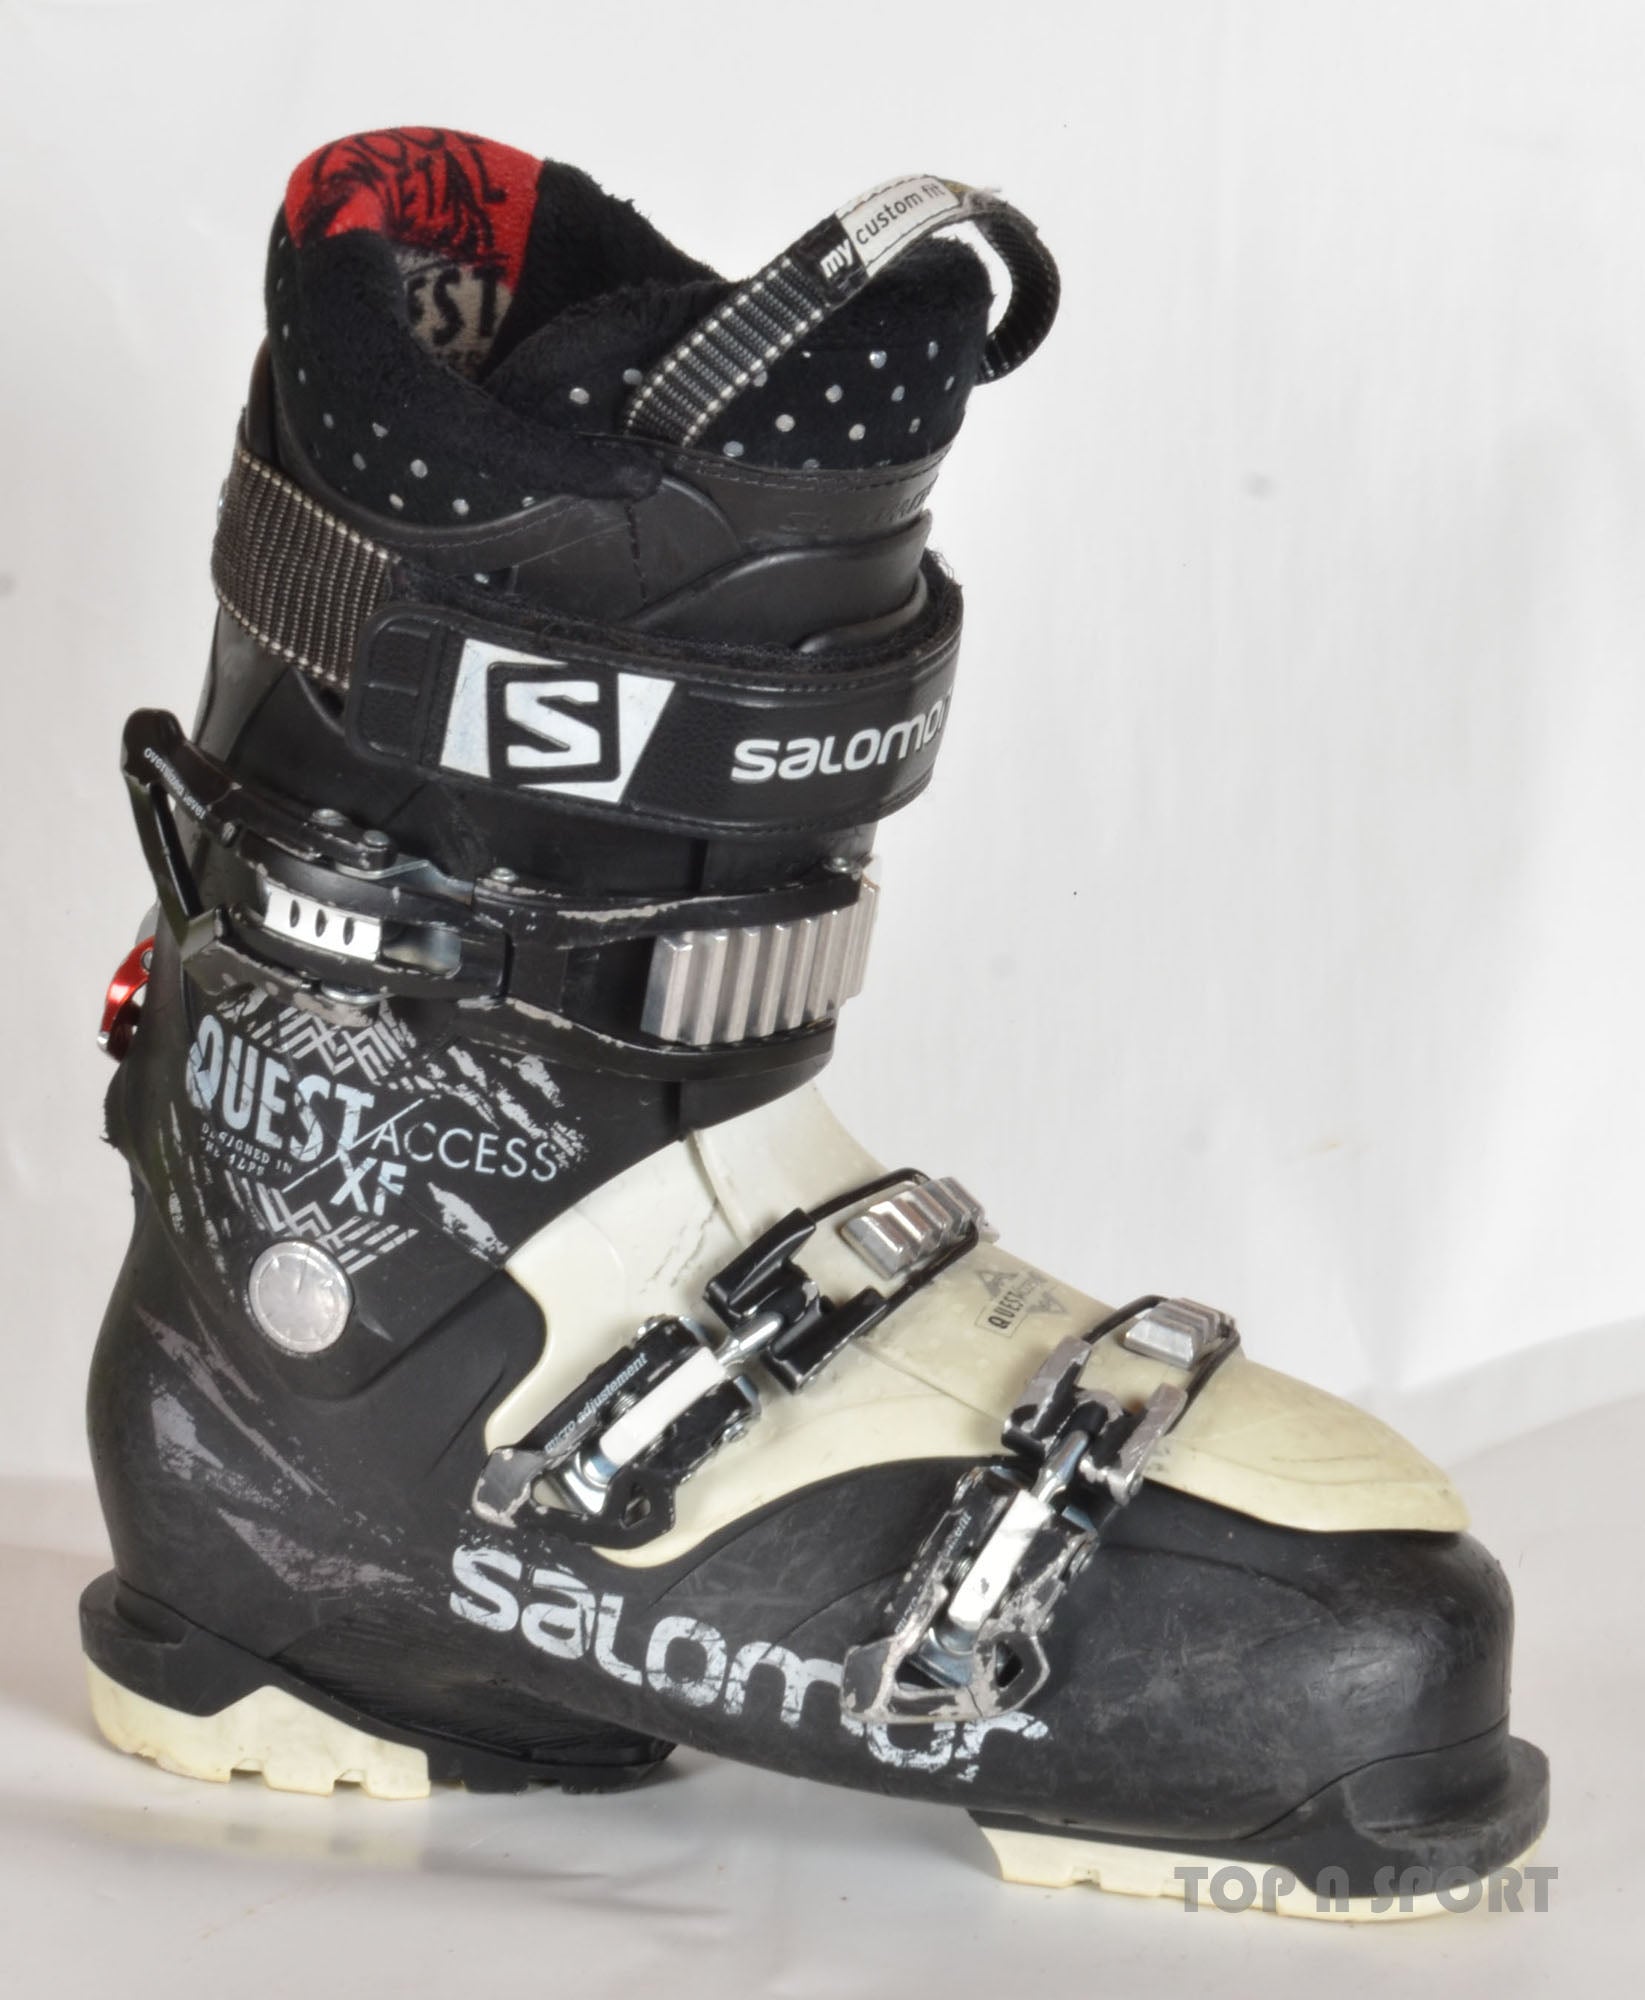 plan Recoger hojas moverse Salomon QUEST ACCESS XF - chaussures de ski d'occasion – Top N Sport,  professionnel du matériel de ski d'occasion